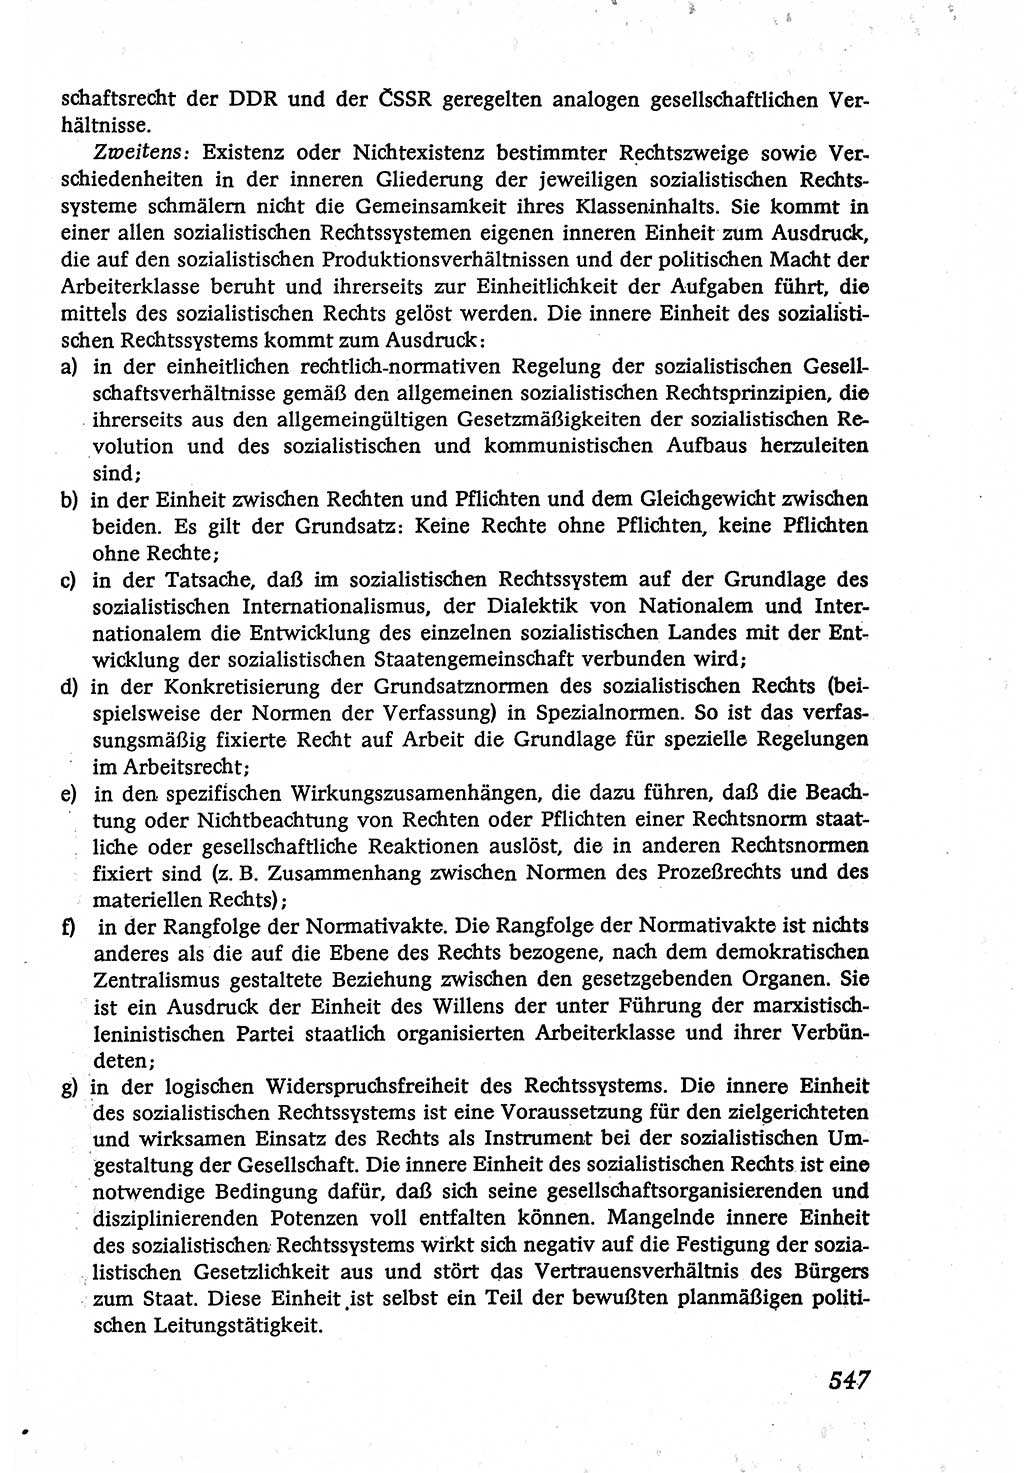 Marxistisch-leninistische (ML) Staats- und Rechtstheorie [Deutsche Demokratische Republik (DDR)], Lehrbuch 1980, Seite 547 (ML St.-R.-Th. DDR Lb. 1980, S. 547)